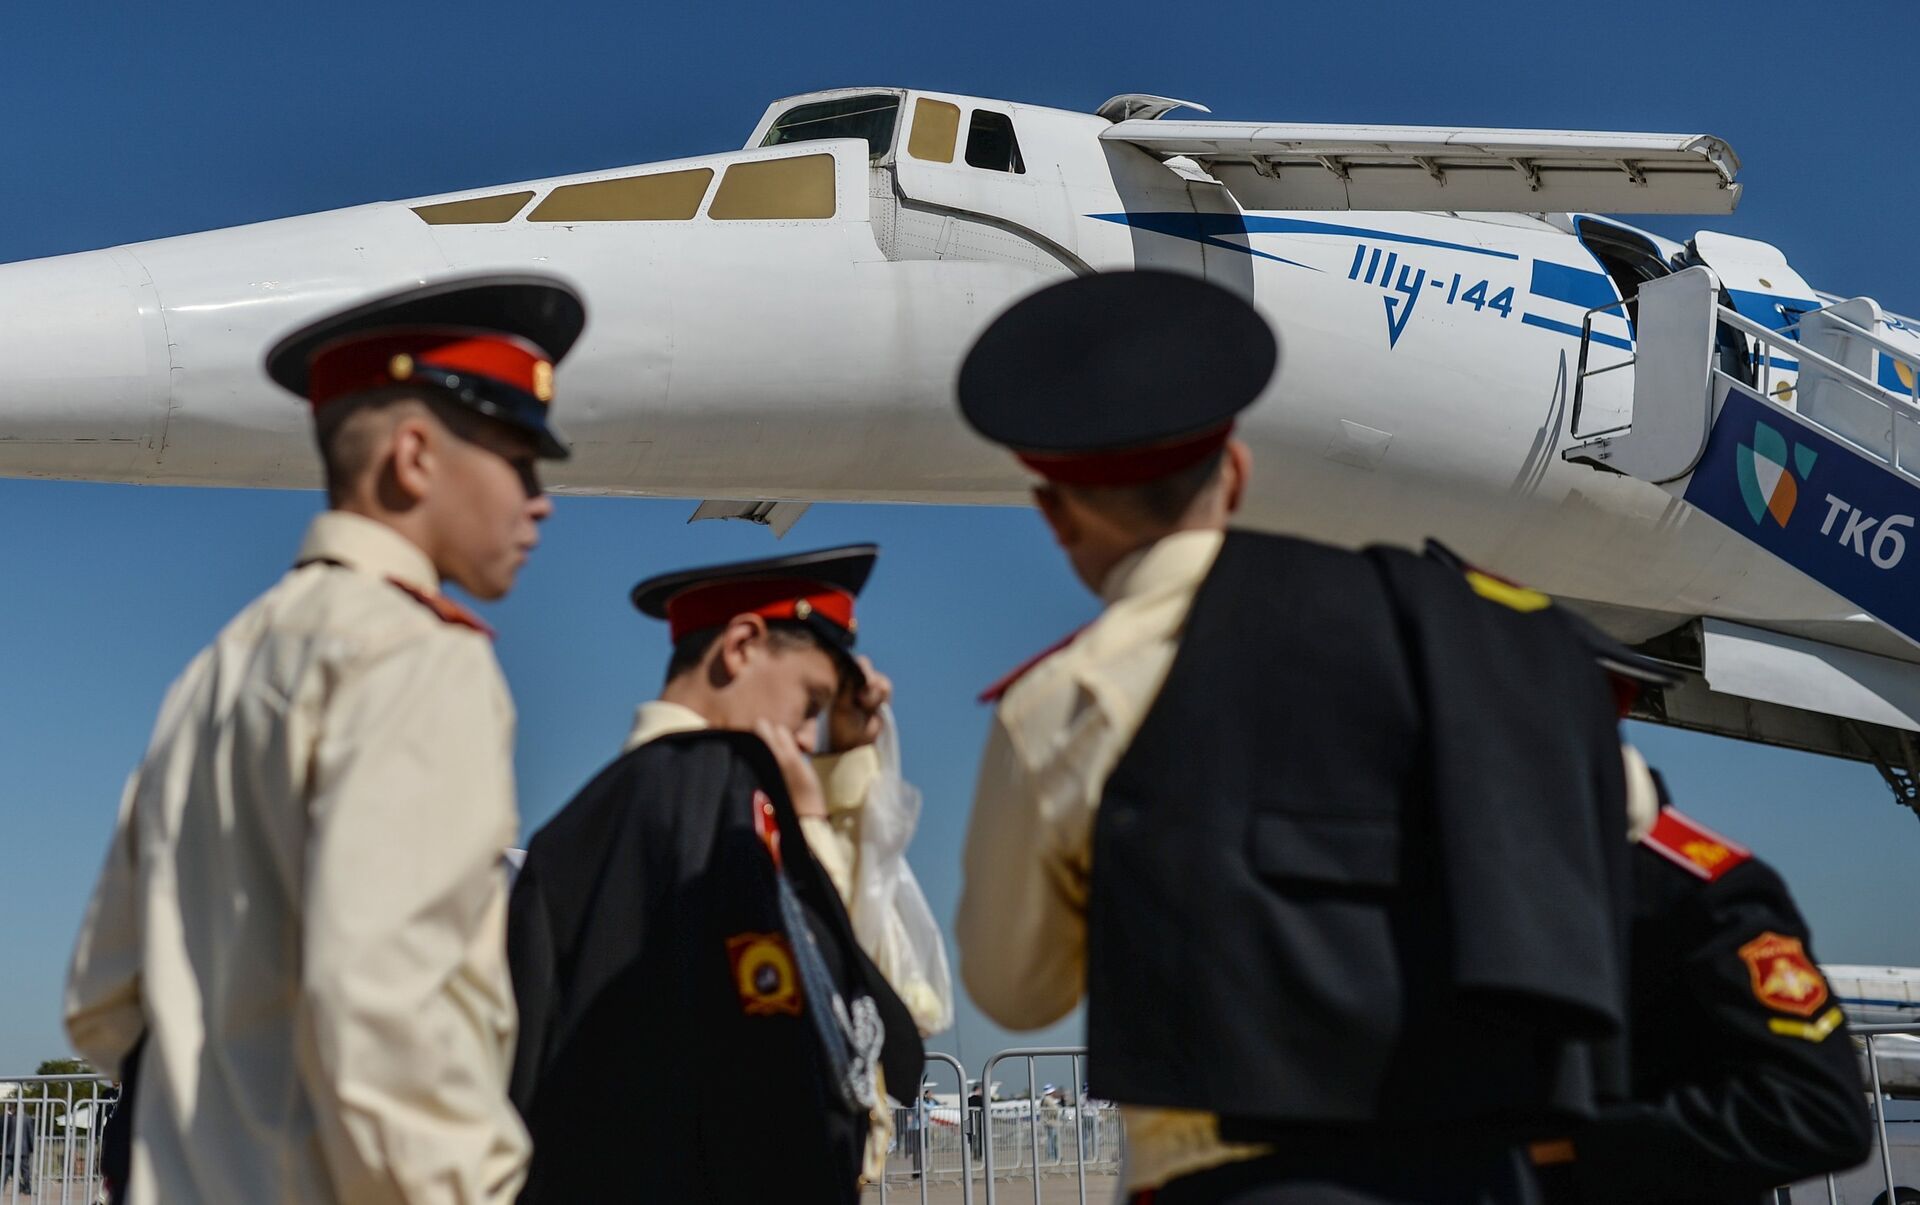 Посетители выставки осматривают самолет Ту-144 во время открытия Международного авиационно-космического салона МАКС-2015 - ИноСМИ, 1920, 09.01.2022